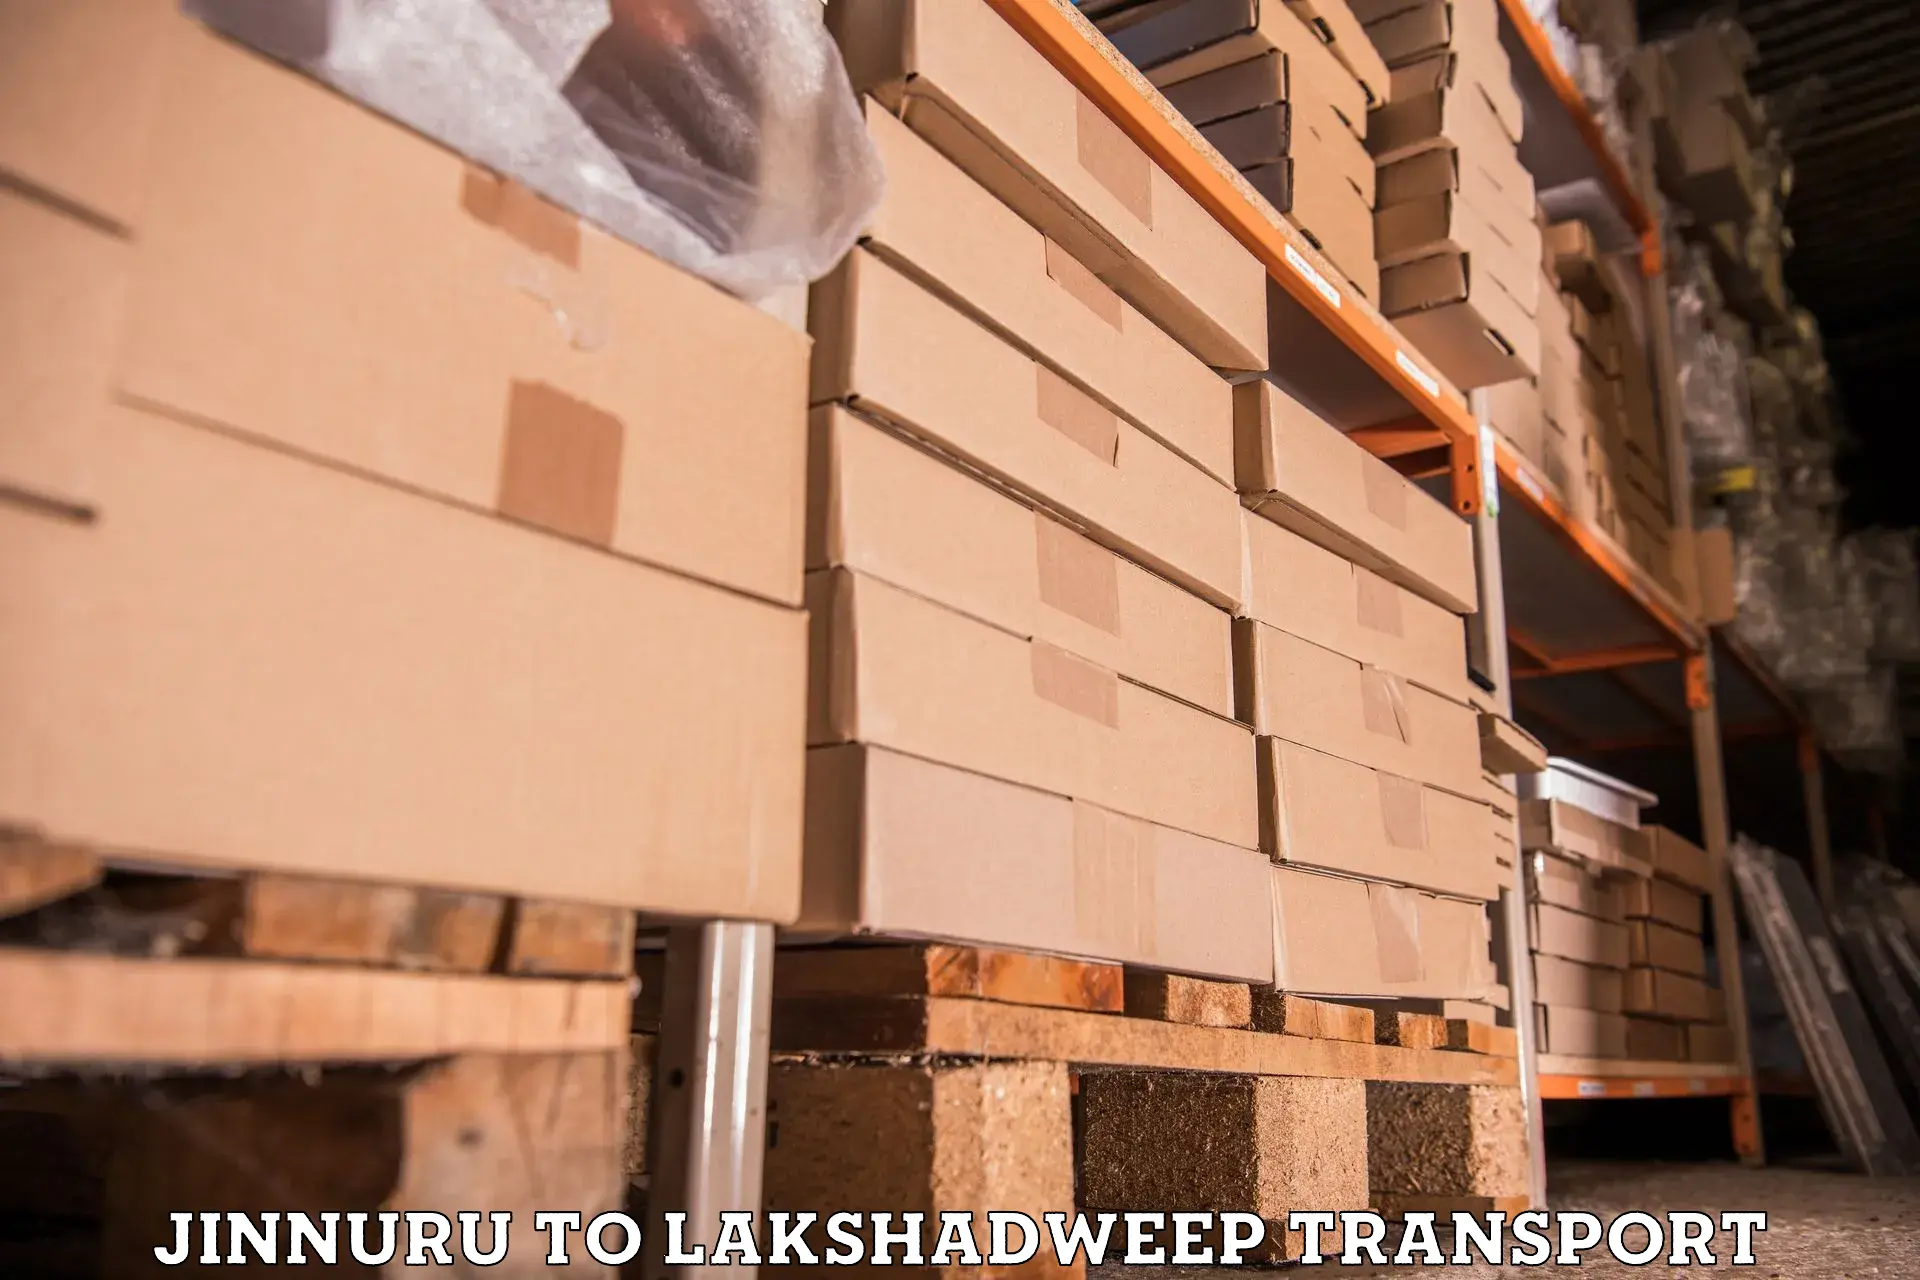 Commercial transport service Jinnuru to Lakshadweep